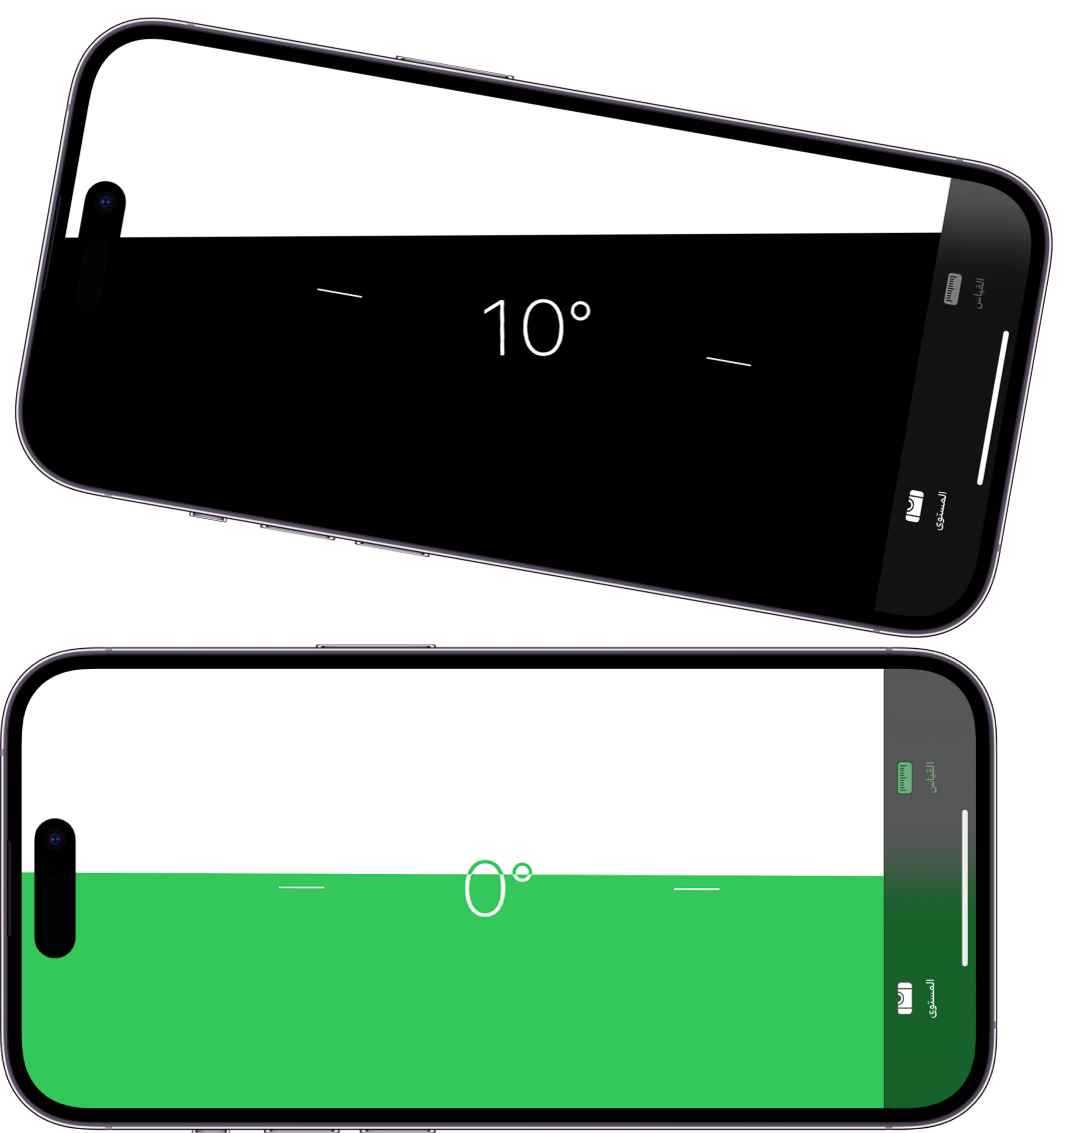 شاشة المستوى في تطبيق القياس. في الجزء العلوي، iPhone مائل بزاوية قدرها عشر درجات؛ وفي الجزء السفلي، iPhone مستو.